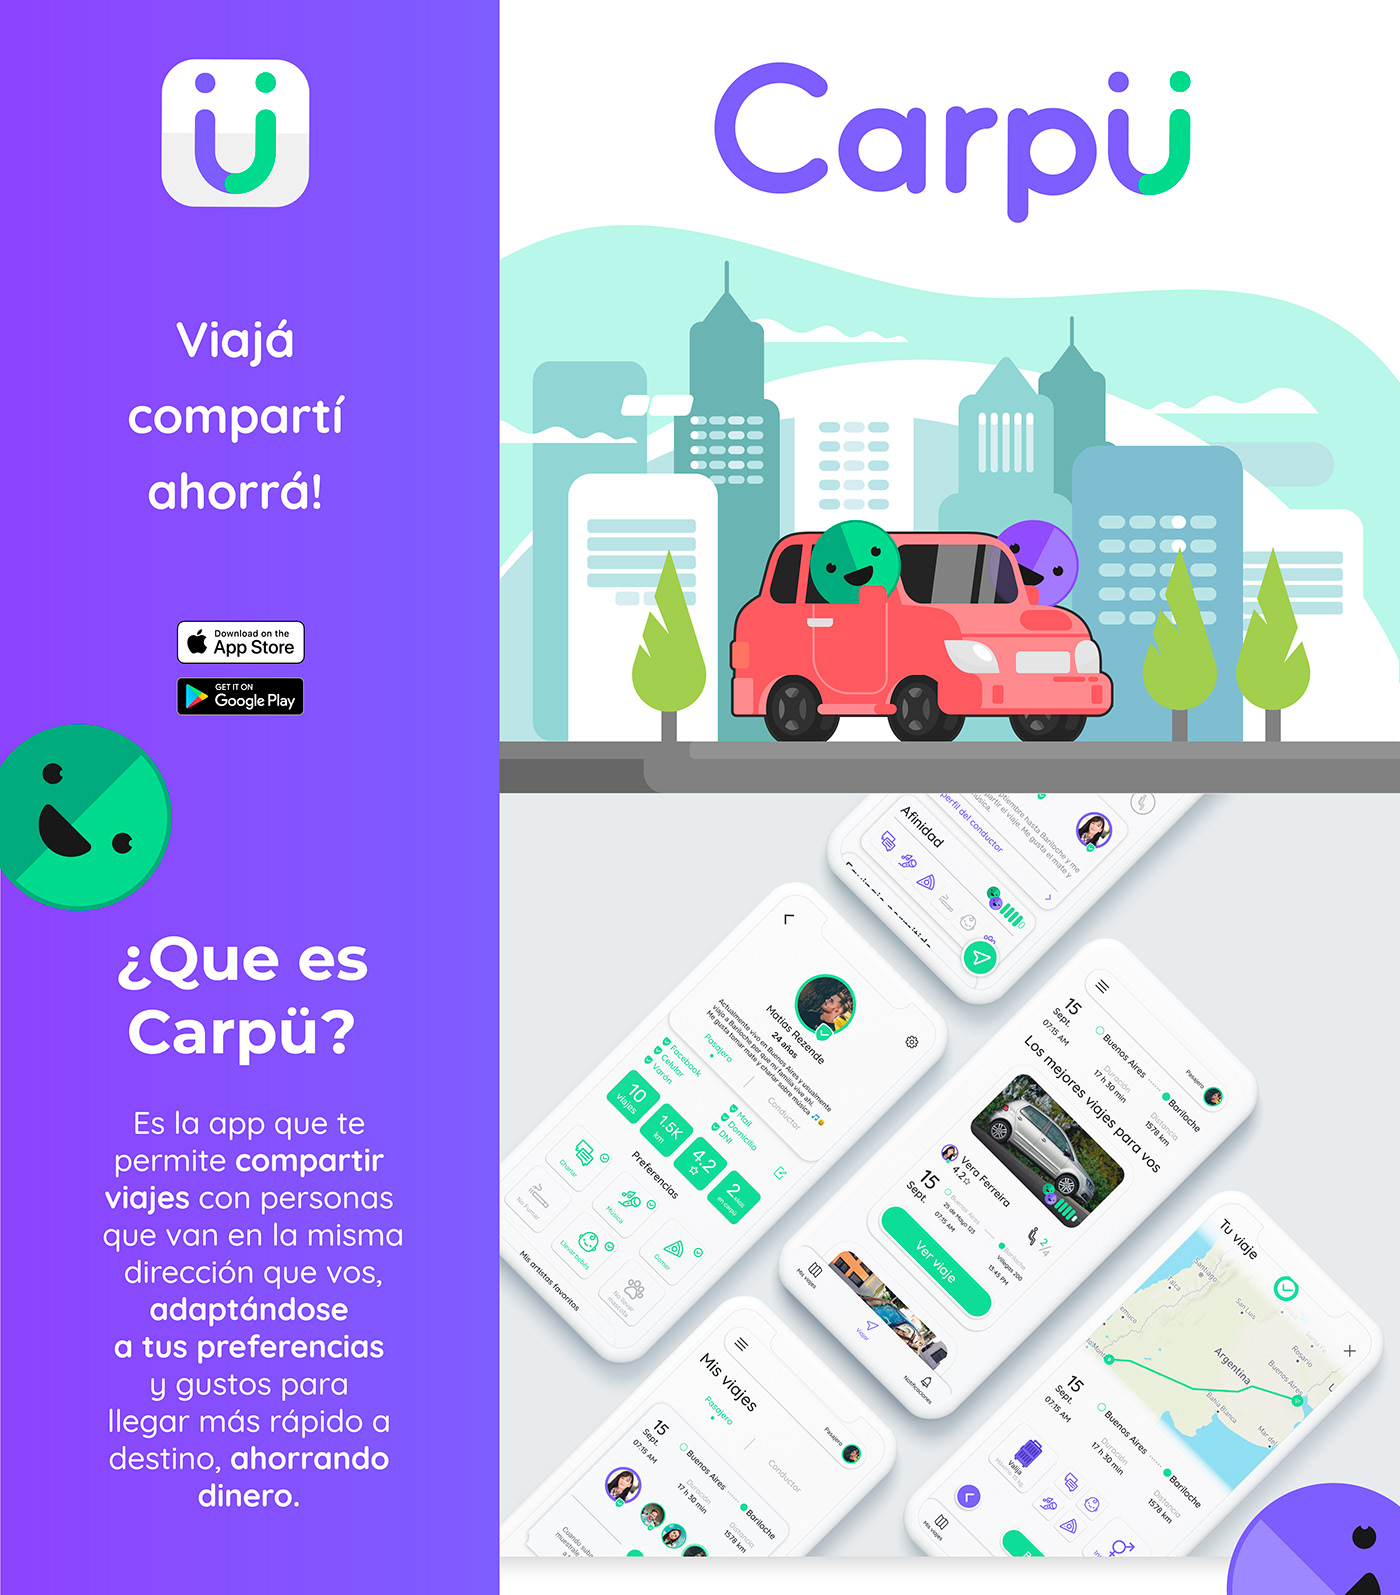 ux UI design dcu heurística carpool app uxui wireframe Travel